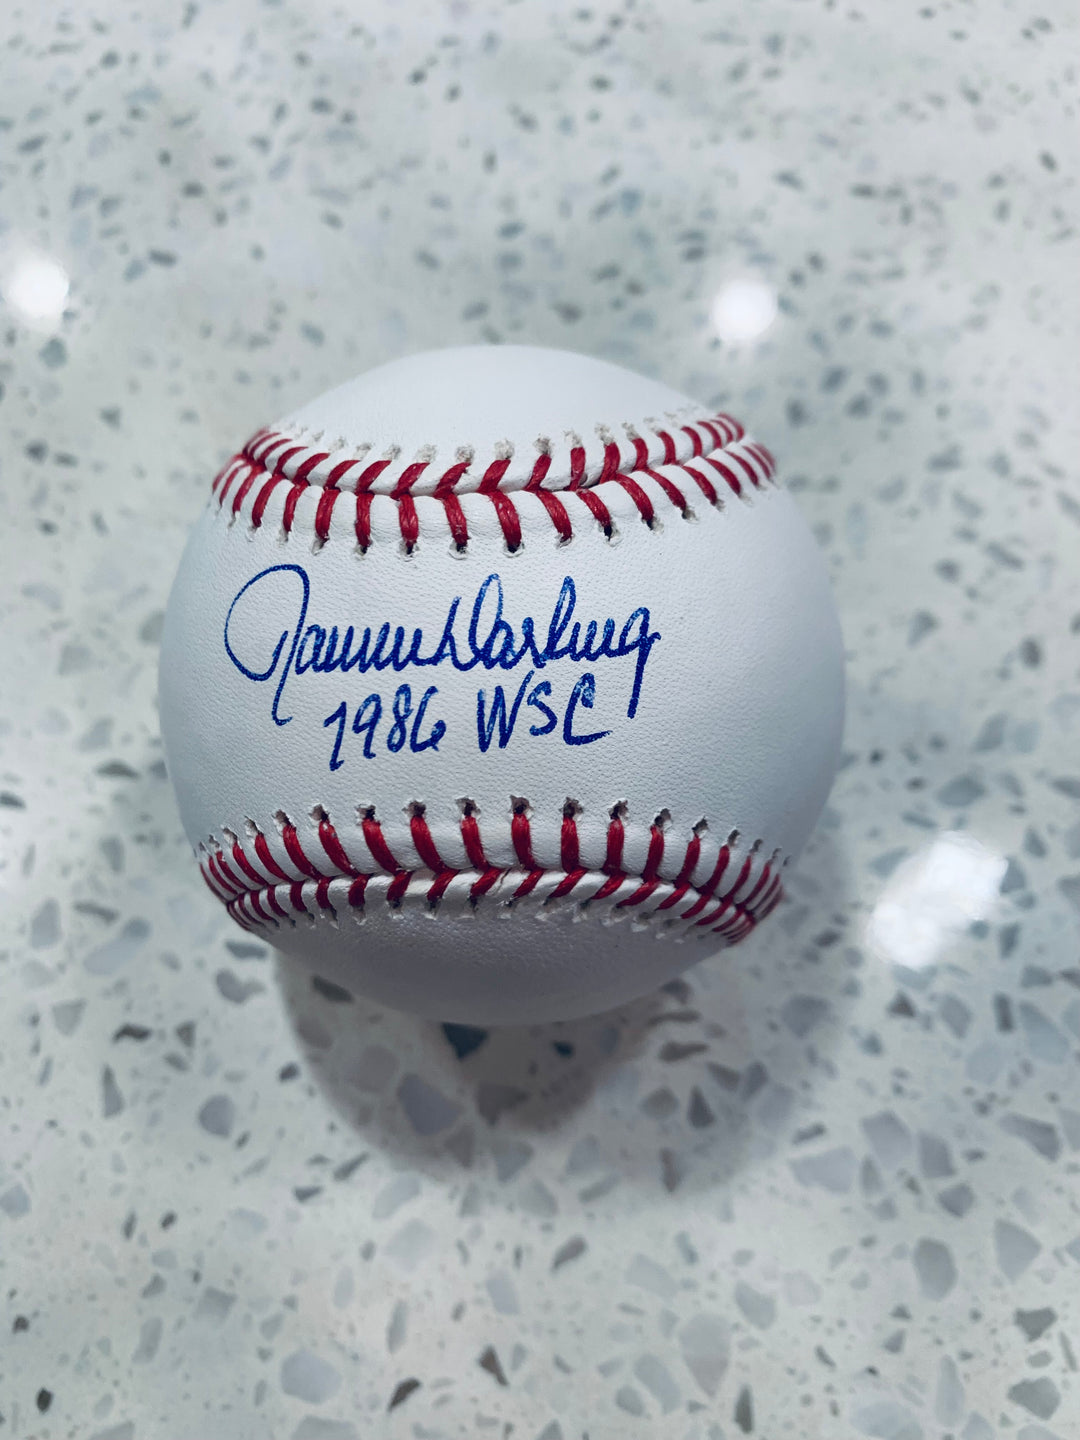 Ron Darling signed baseball